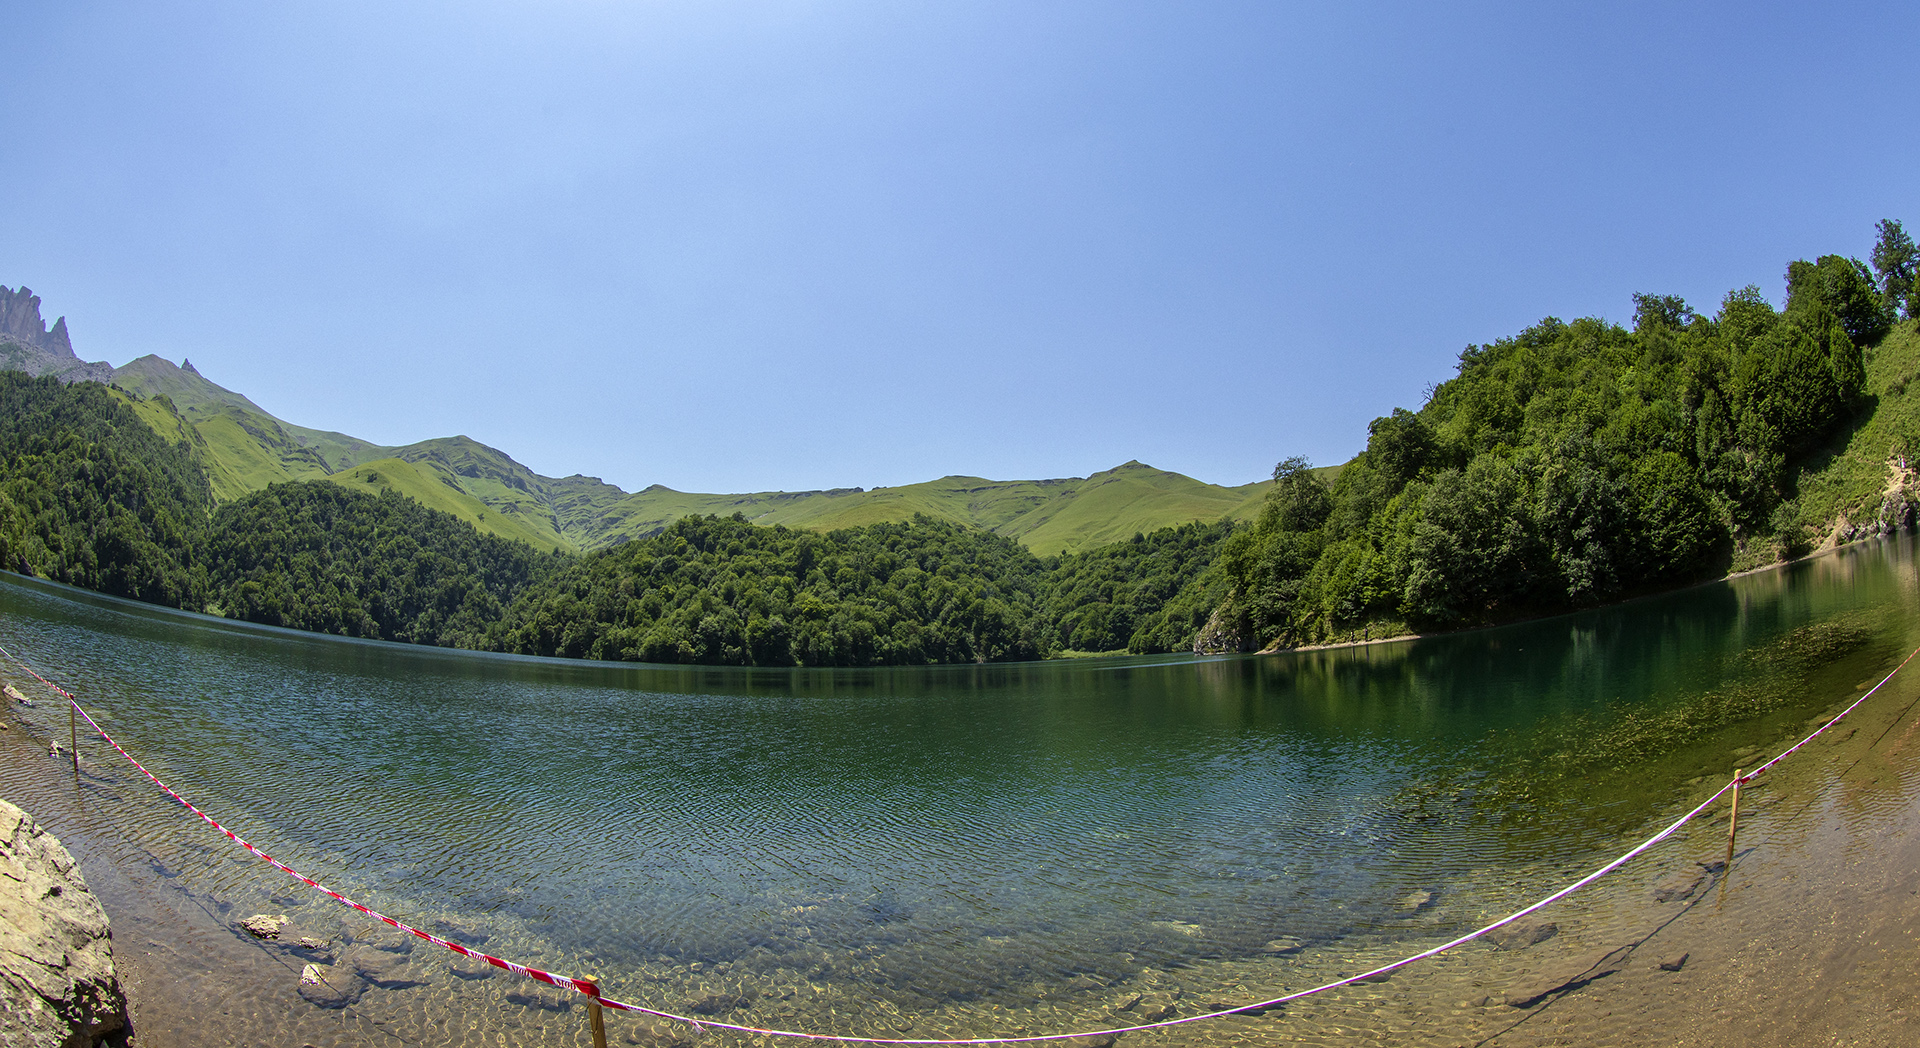 Hồ trên núi Goygol. Đây là miệng núi lửa từ hàng nghìn năm trước, tại thành phố Zakatala - phía Bắc Azerbaijan